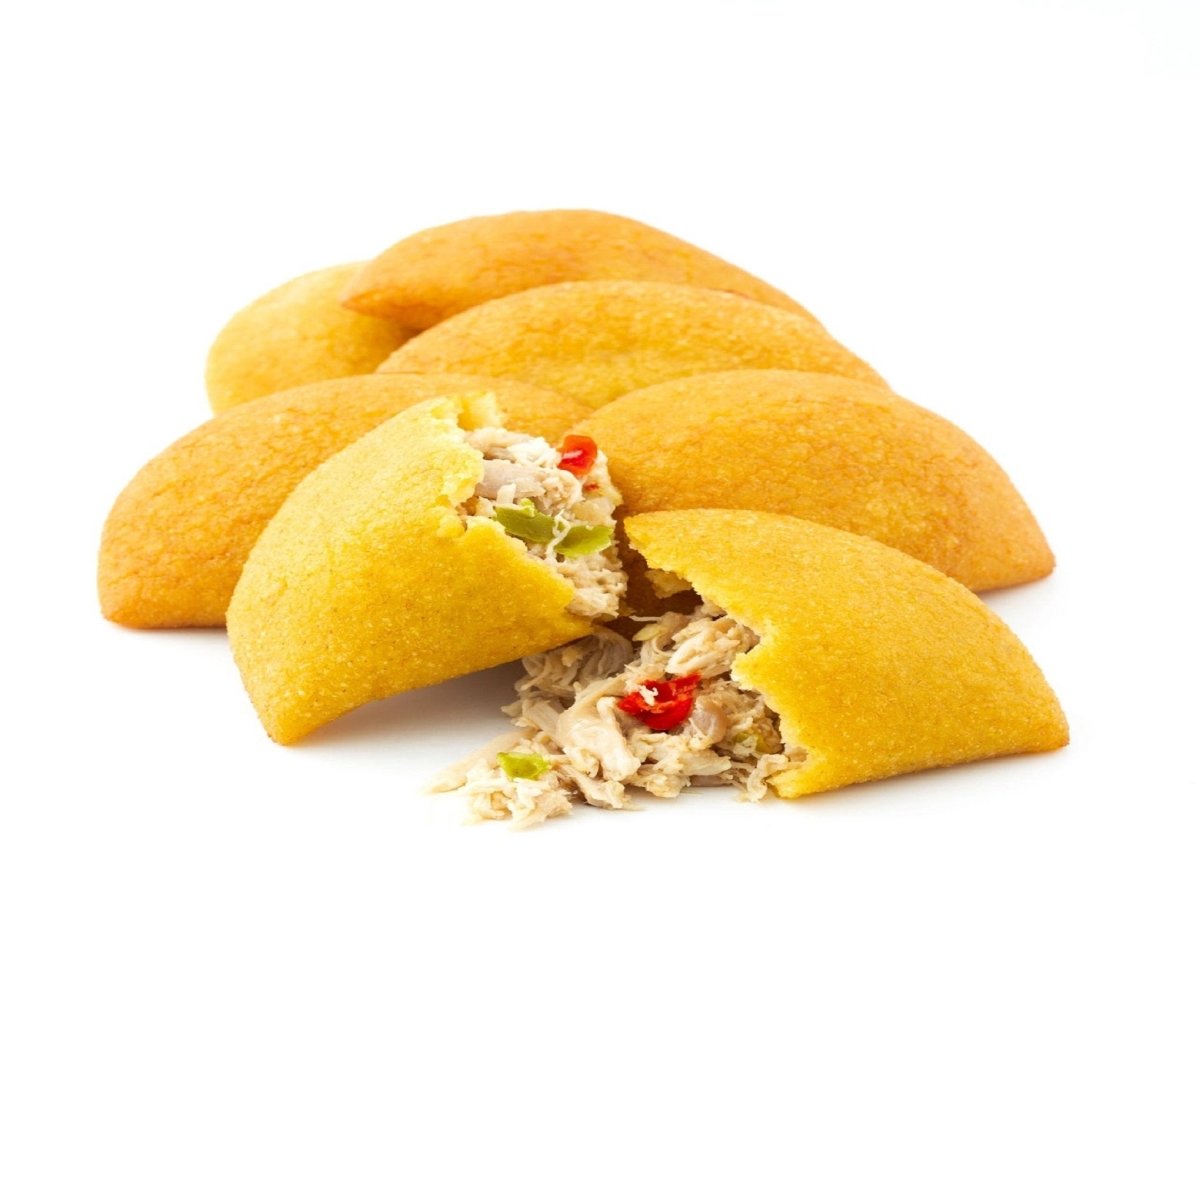 GotoPopupYYC - Heaven - Chicken Mini Empanadas - Gluten Free -HVN_CKN-0001